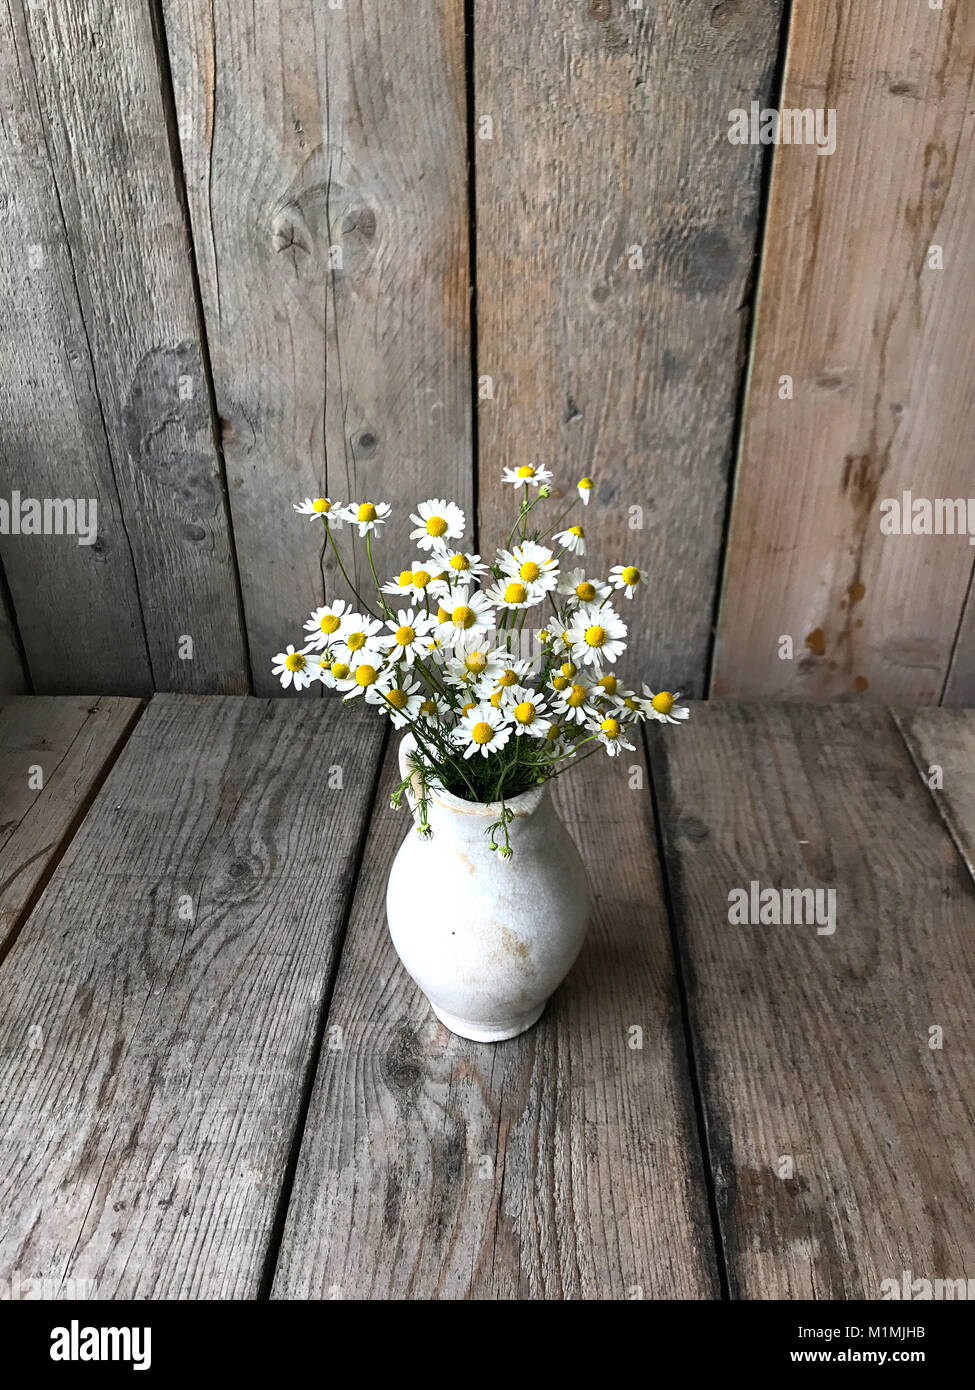 Vaso riempito di margherite su un tavolo di legno Foto Stock